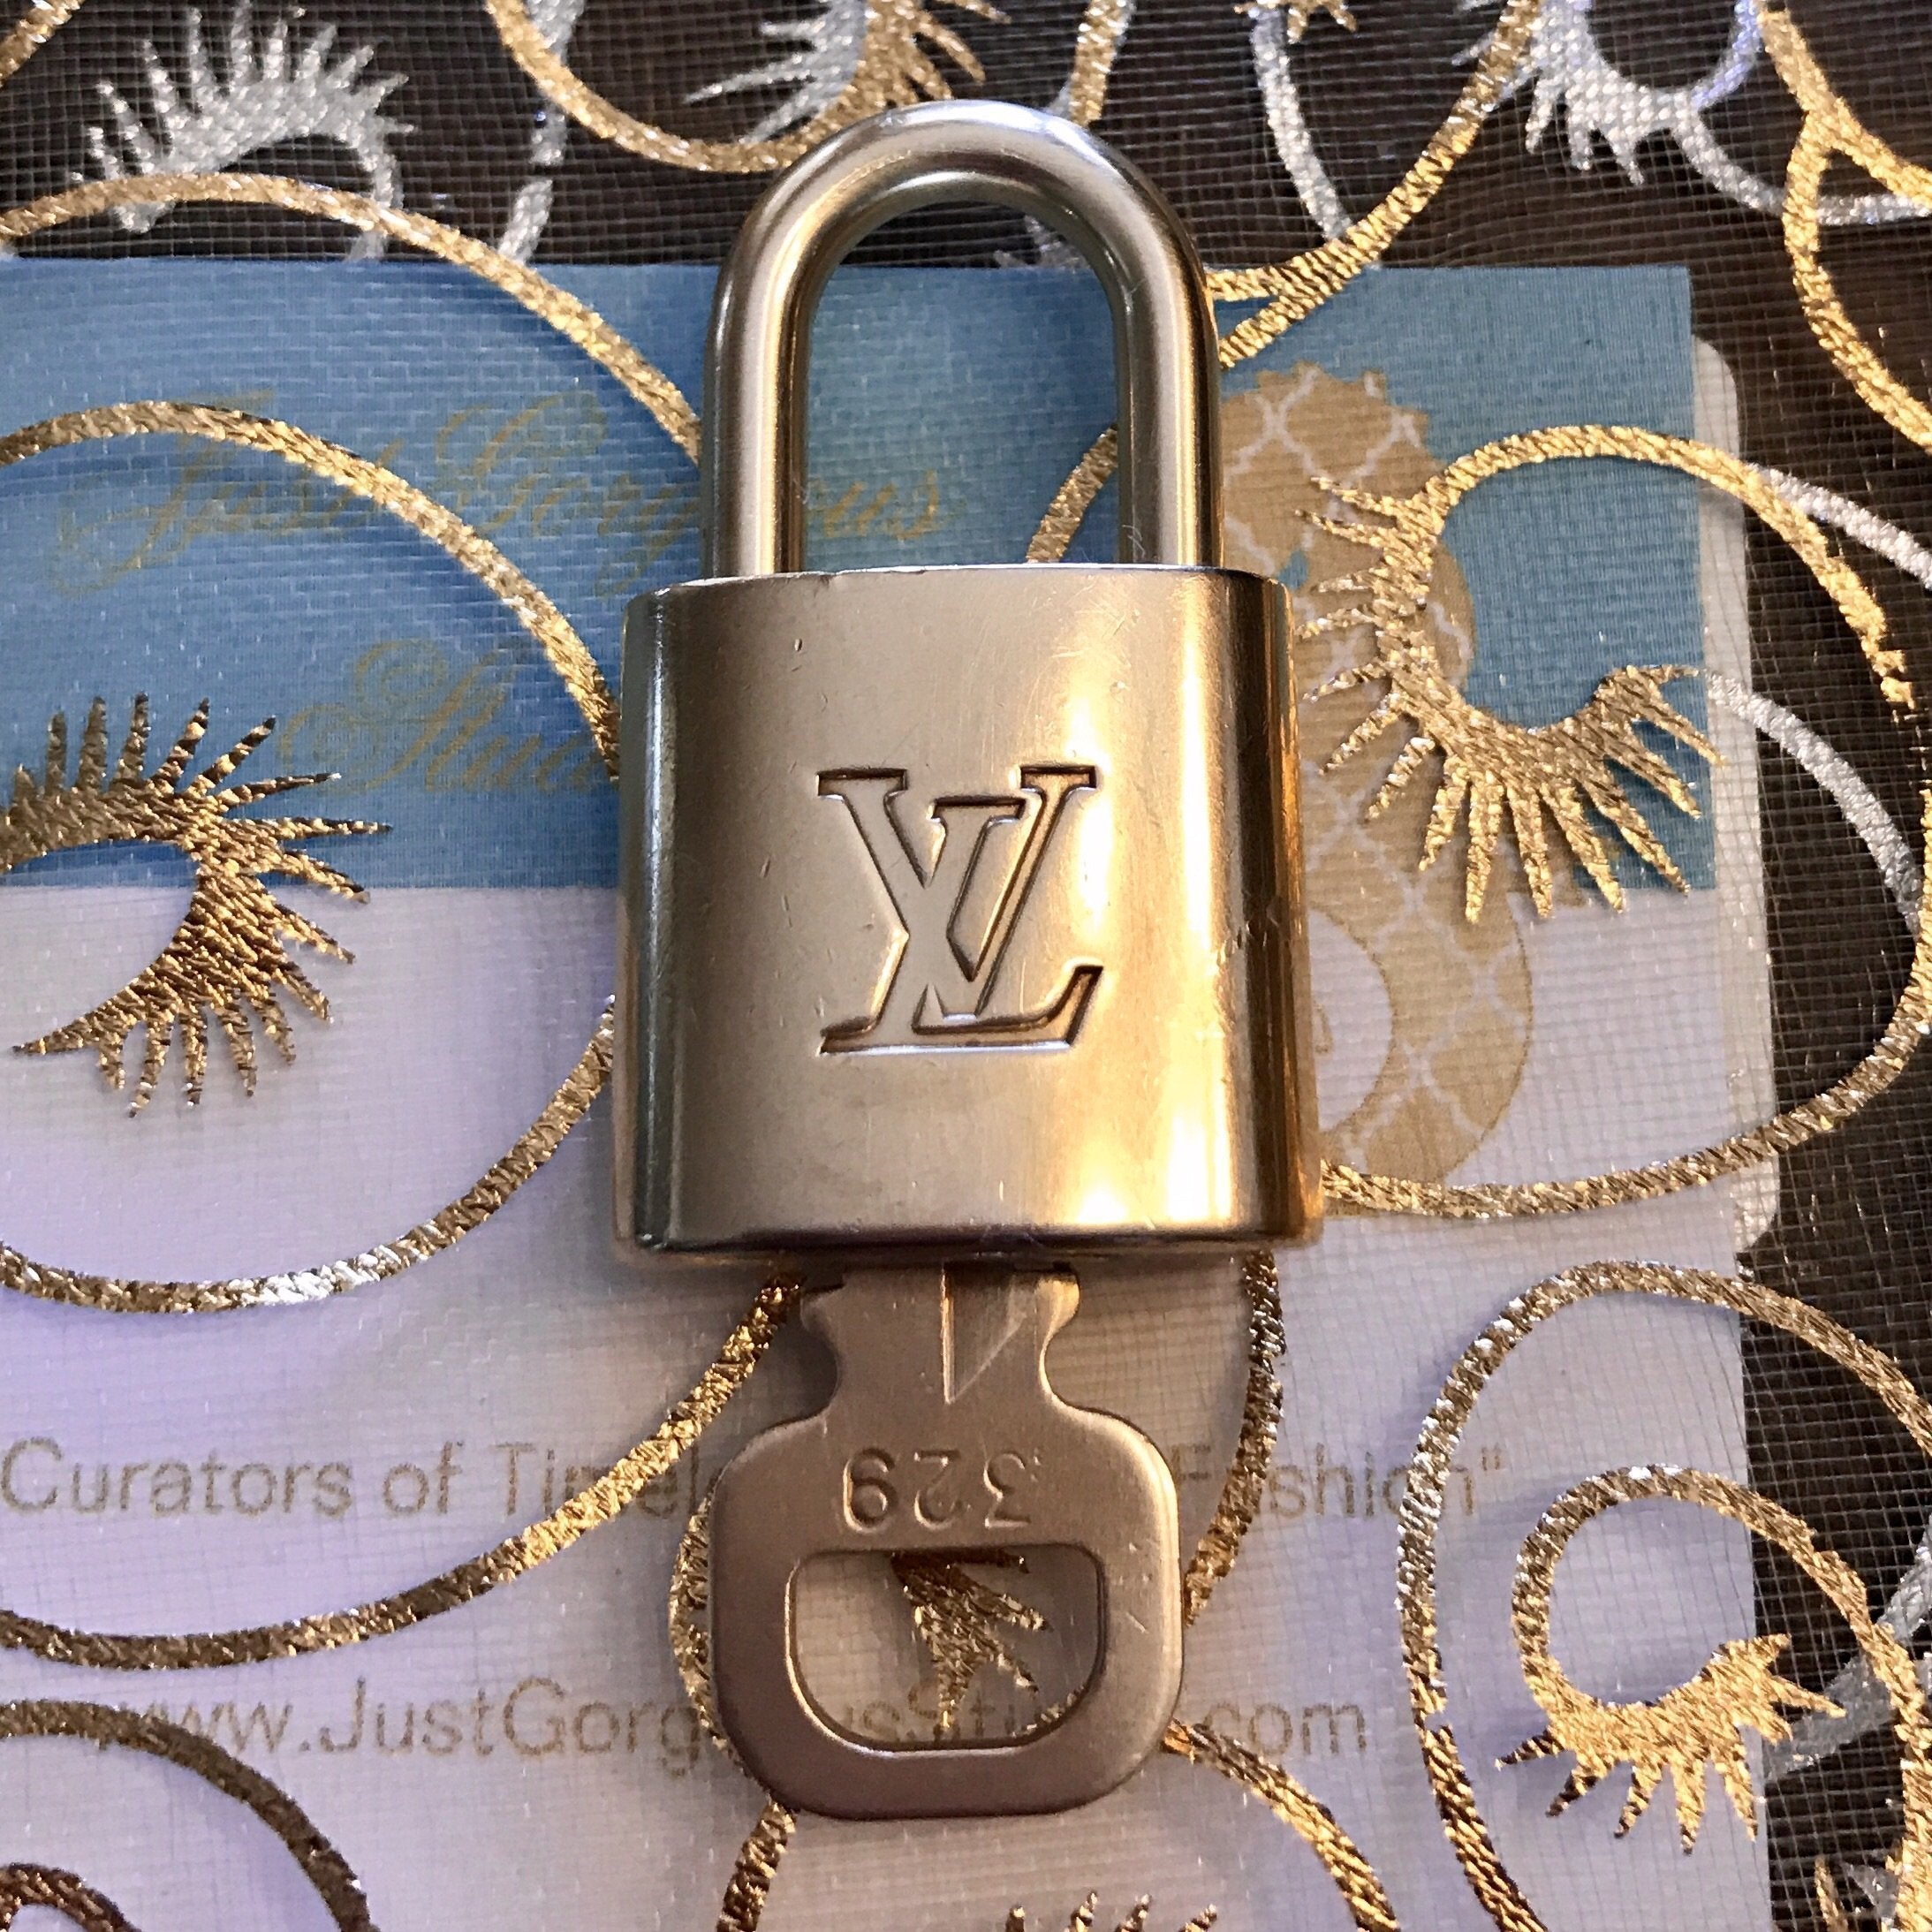 Louis Vuitton Lock & Key: 2 Sets